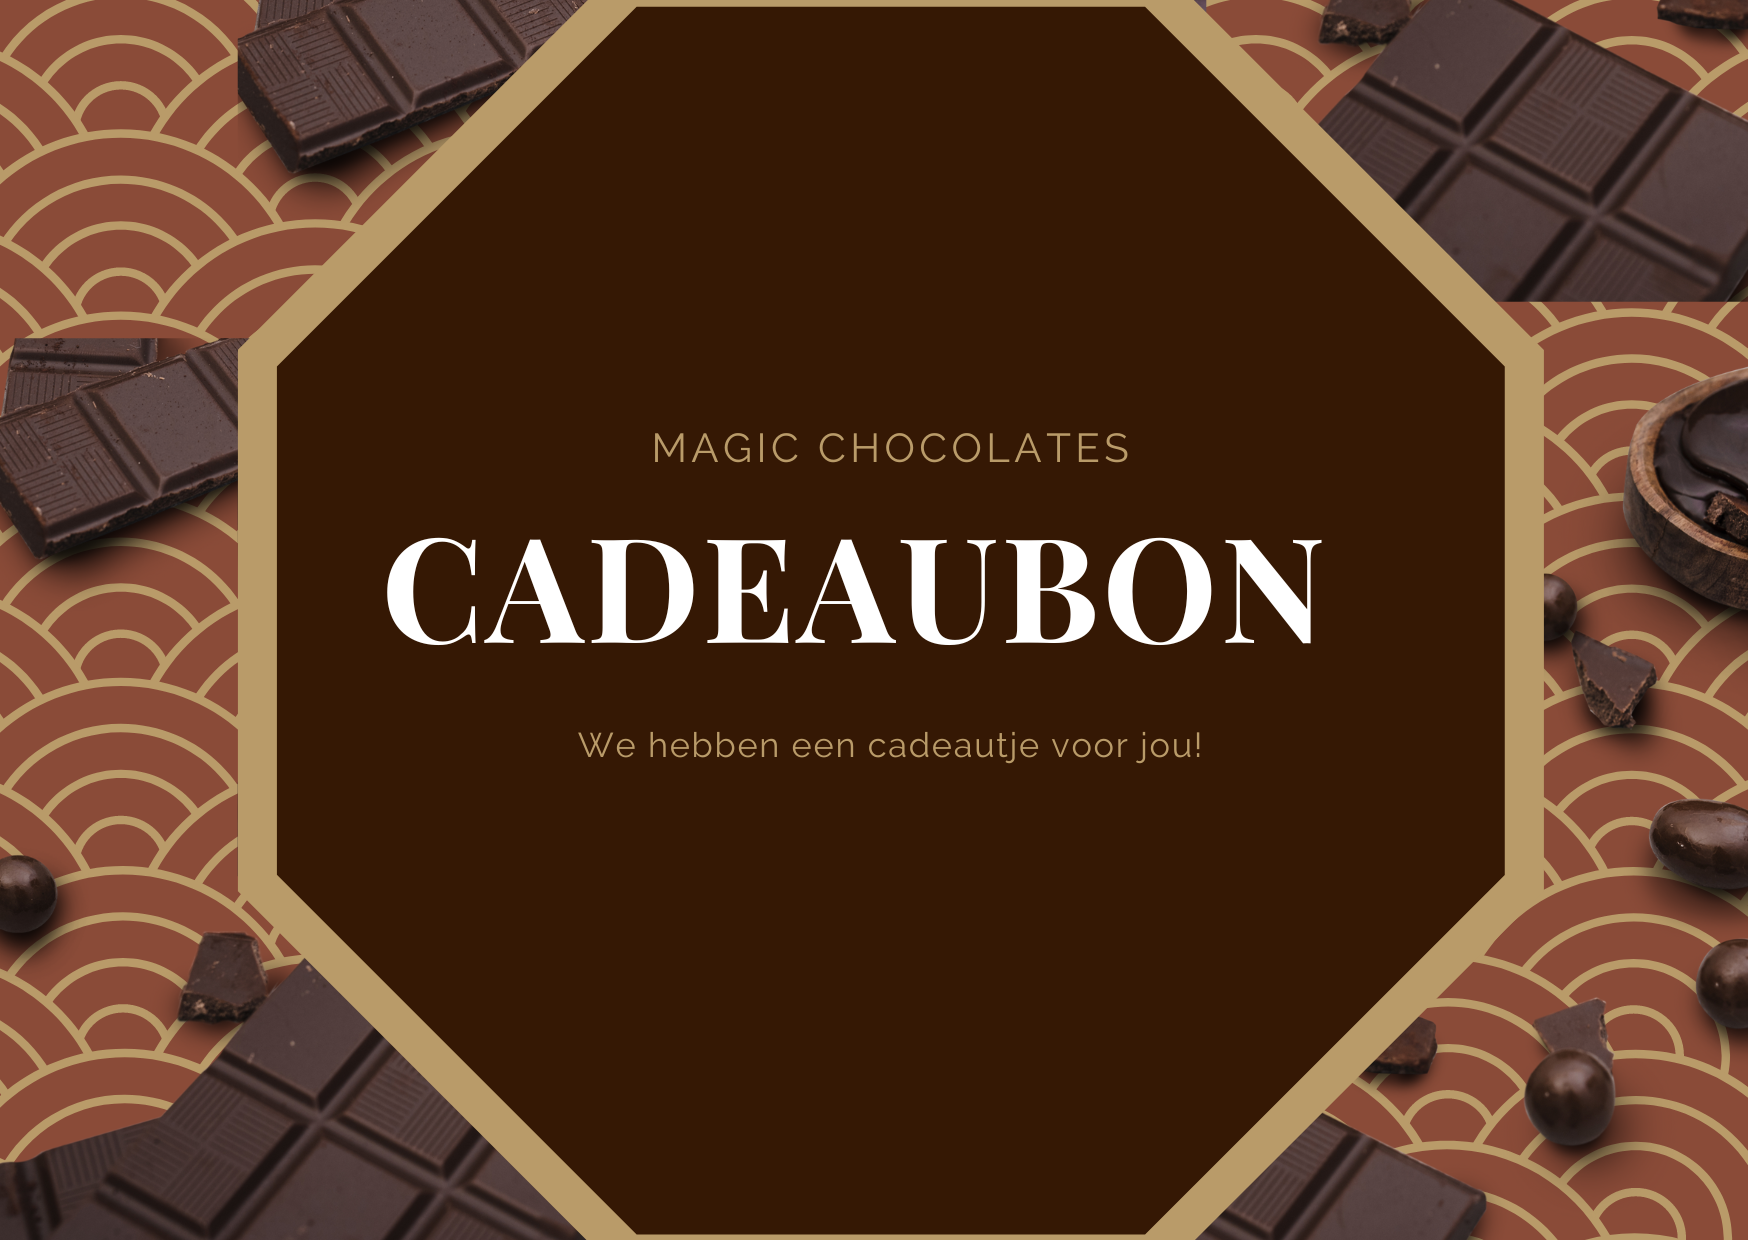 Cadeau bon Magic Chocolates